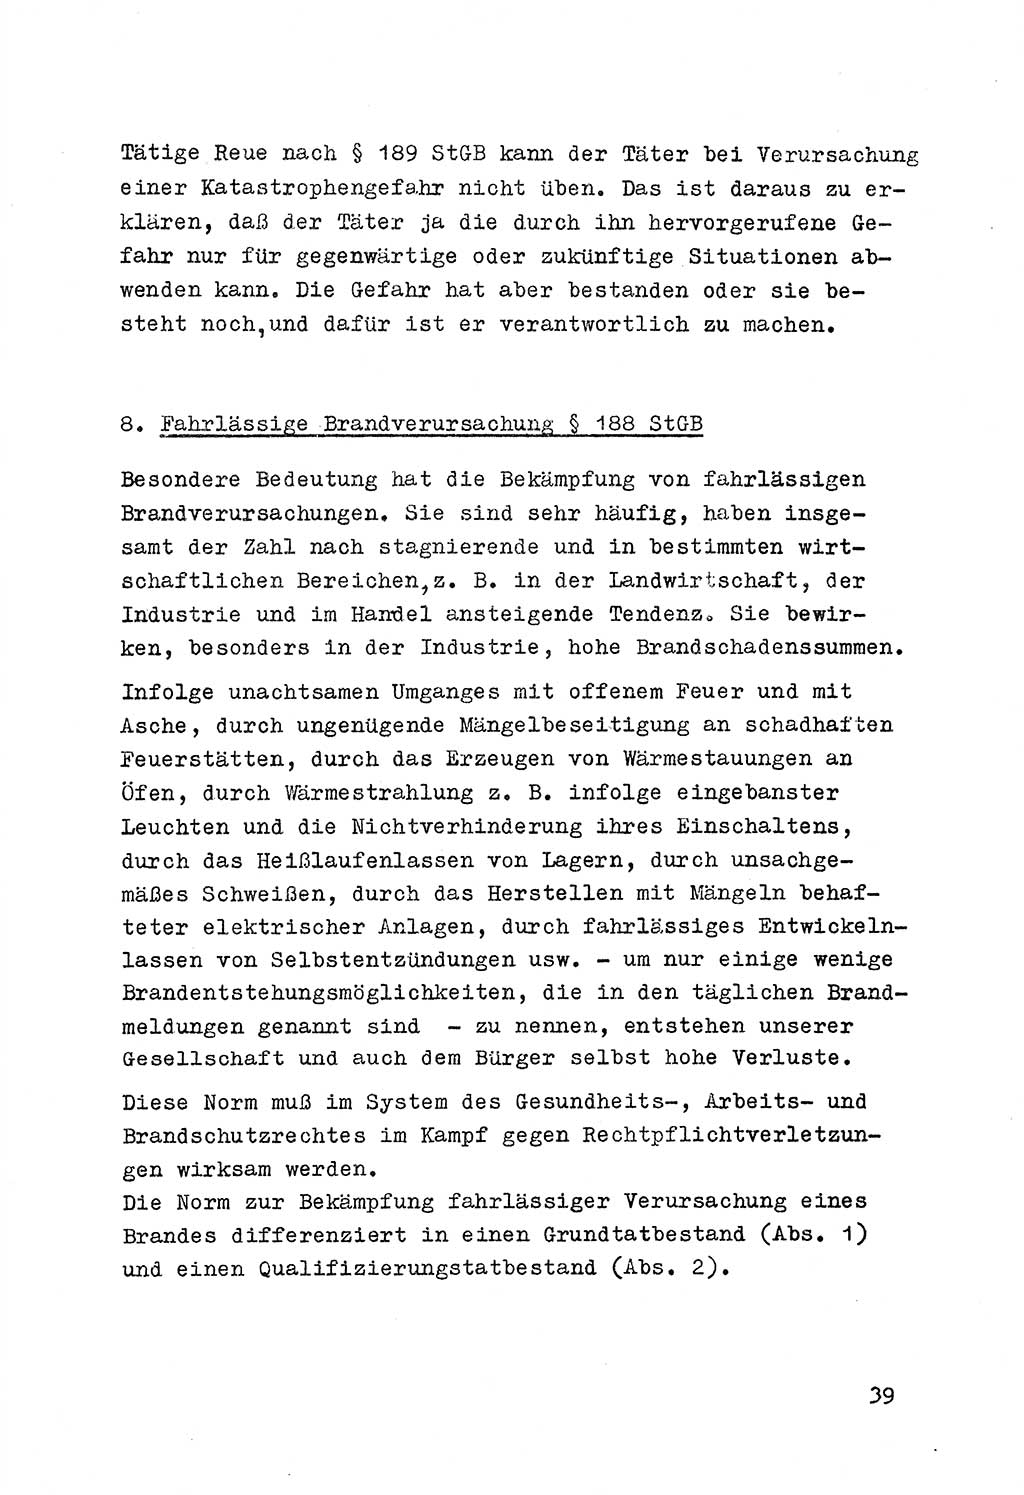 Strafrecht der DDR (Deutsche Demokratische Republik), Besonderer Teil, Lehrmaterial, Heft 7 1970, Seite 39 (Strafr. DDR BT Lehrmat. H. 7 1970, S. 39)